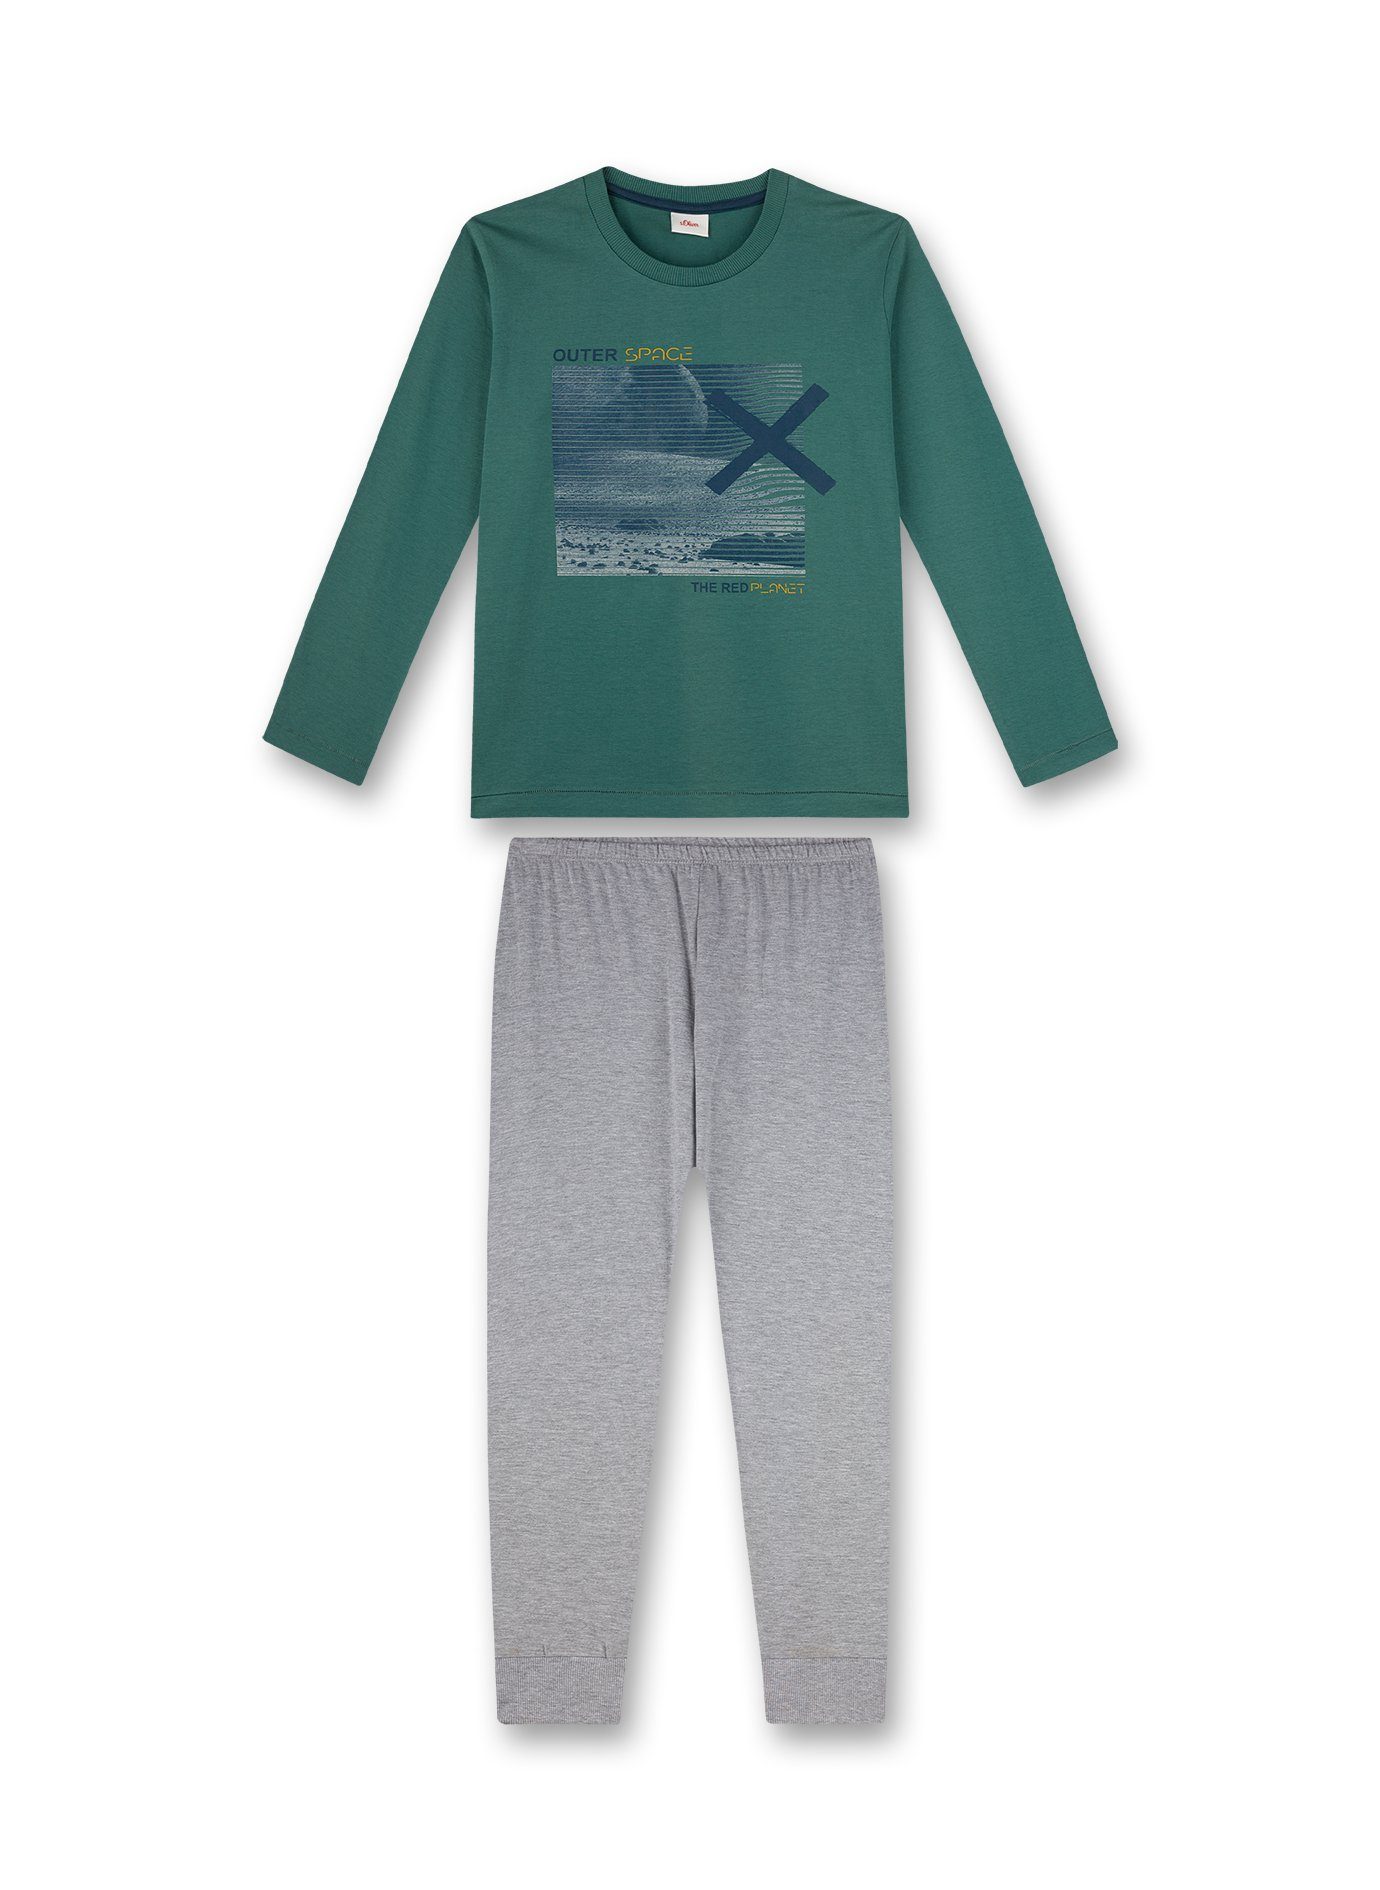 Outer Schlafanzug grau s.Oliver Pyjama lang (2 Jungen Pyjama Junior s.Oliver Space tlg) grün